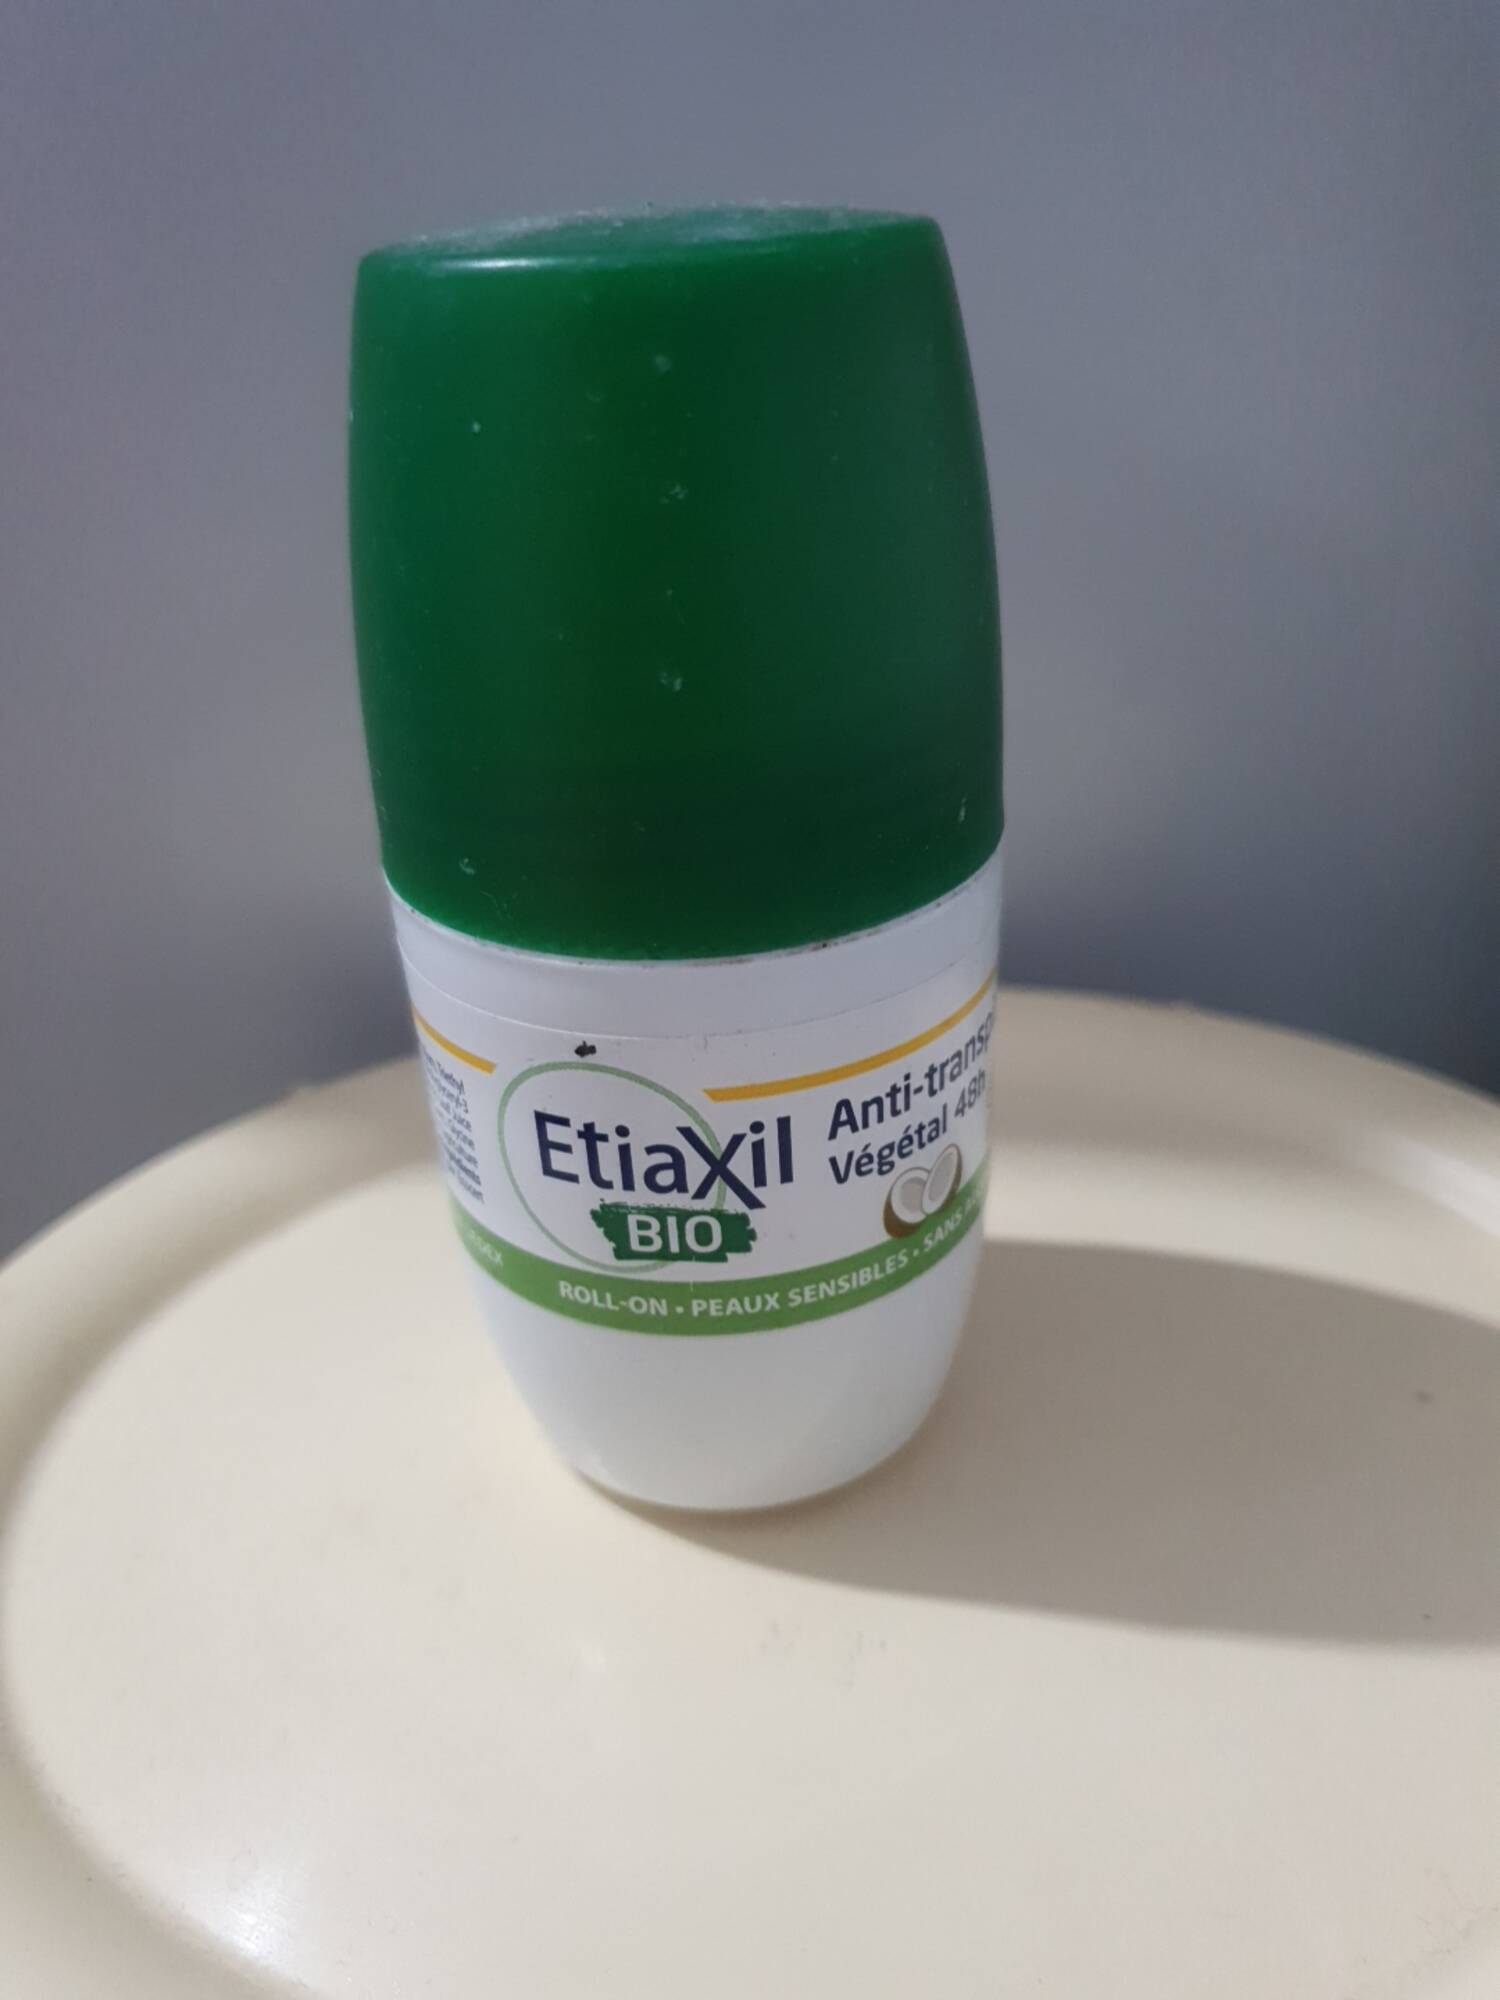 ETIAXIL - Bio - Anti-transpirant végétal 48h